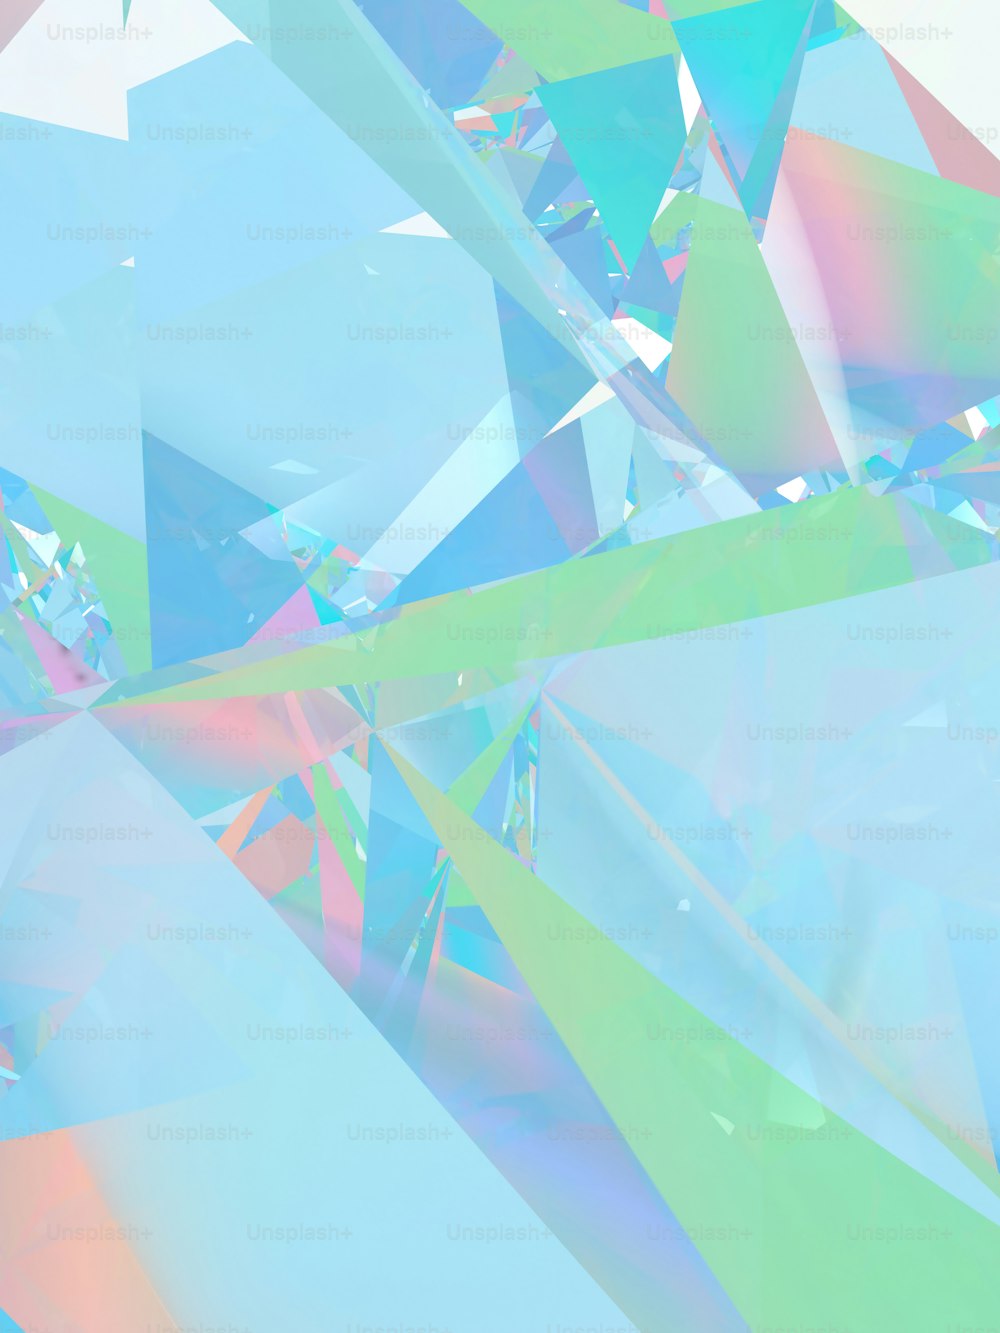 다이아몬�드와 같은 물체의 여러 가지 빛깔의 이미지